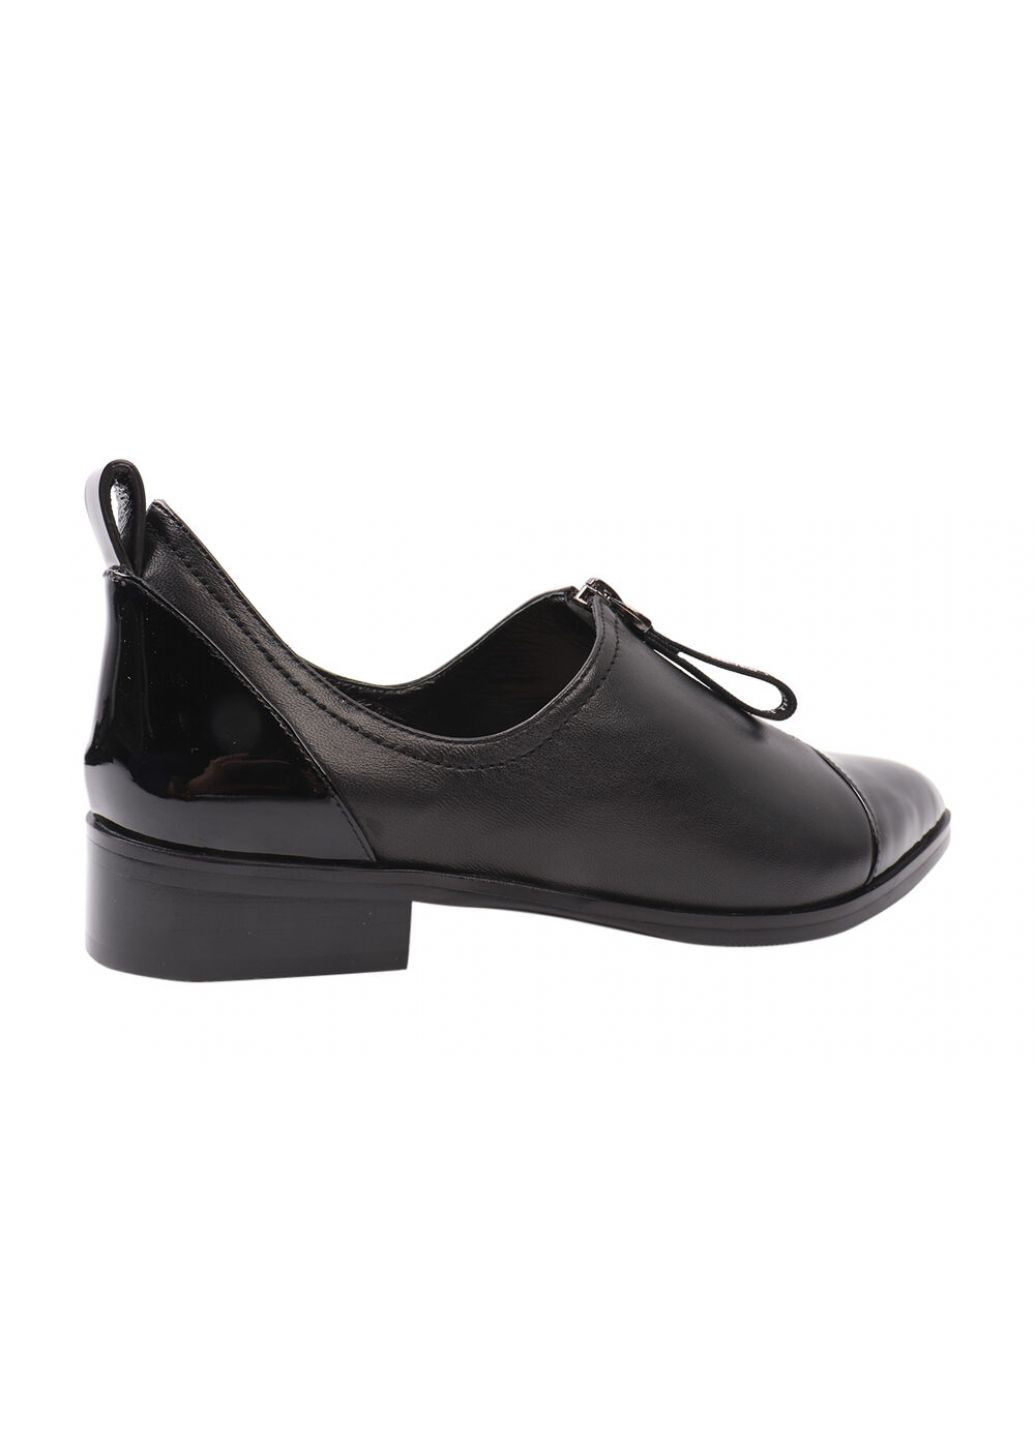 Туфлі жіночі з натуральної шкіри, на низькому ходу, чорні, Angelo Vani 142-21dtc (257429161)